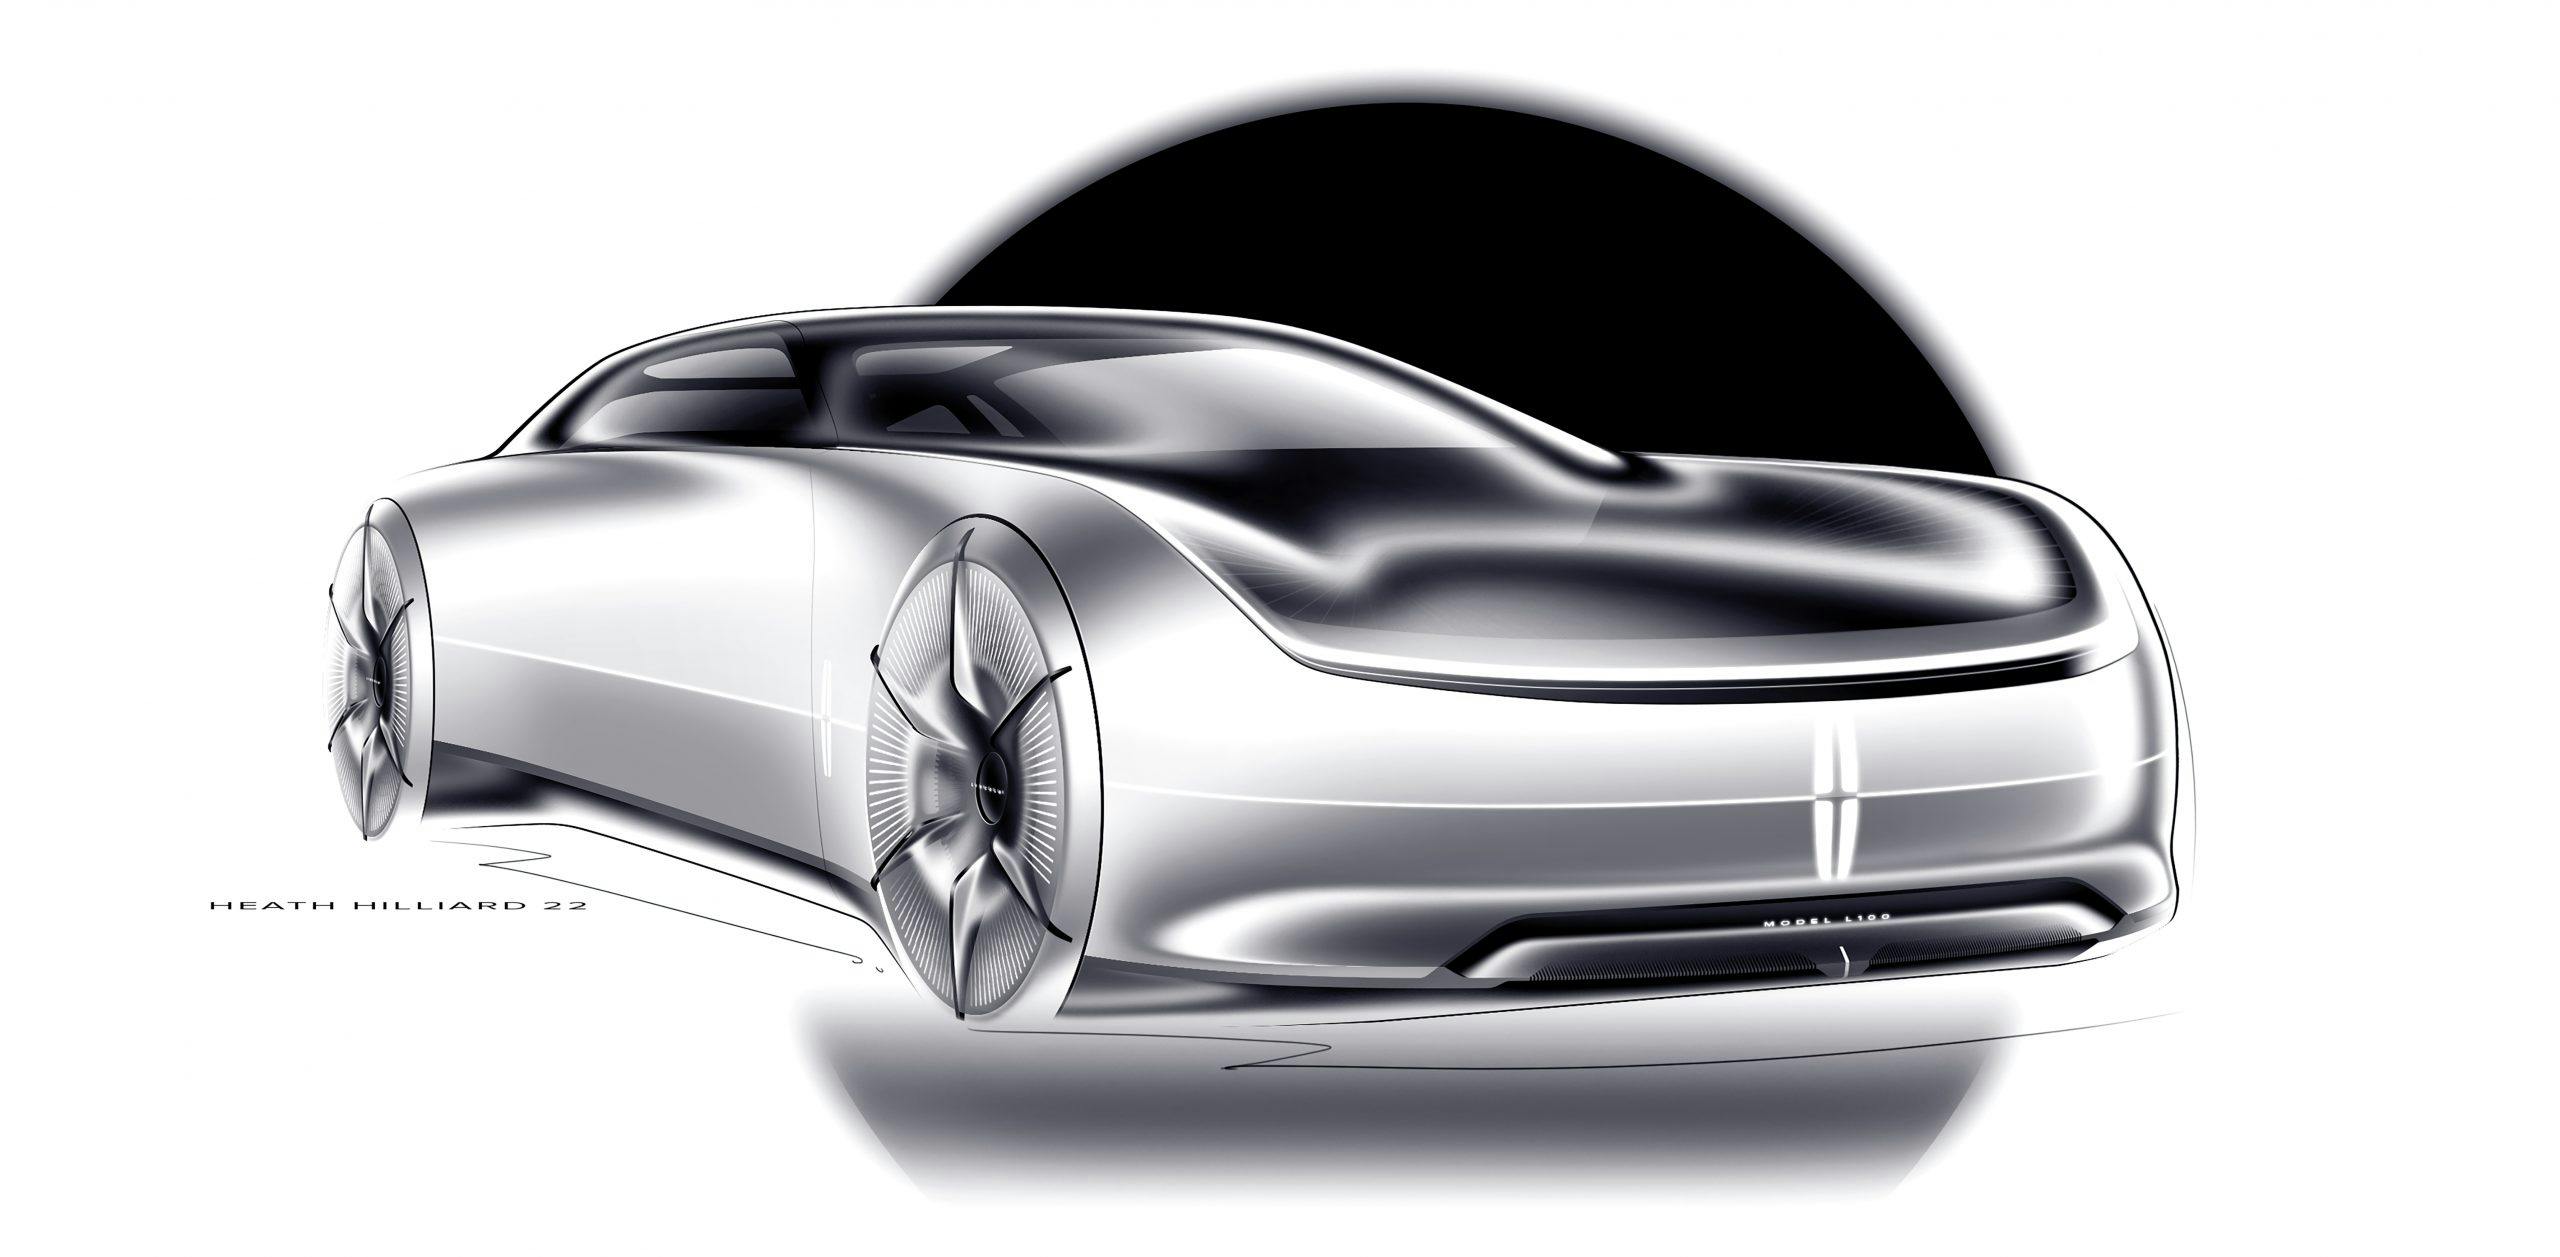 Lincoln Model L100 Concept sketch